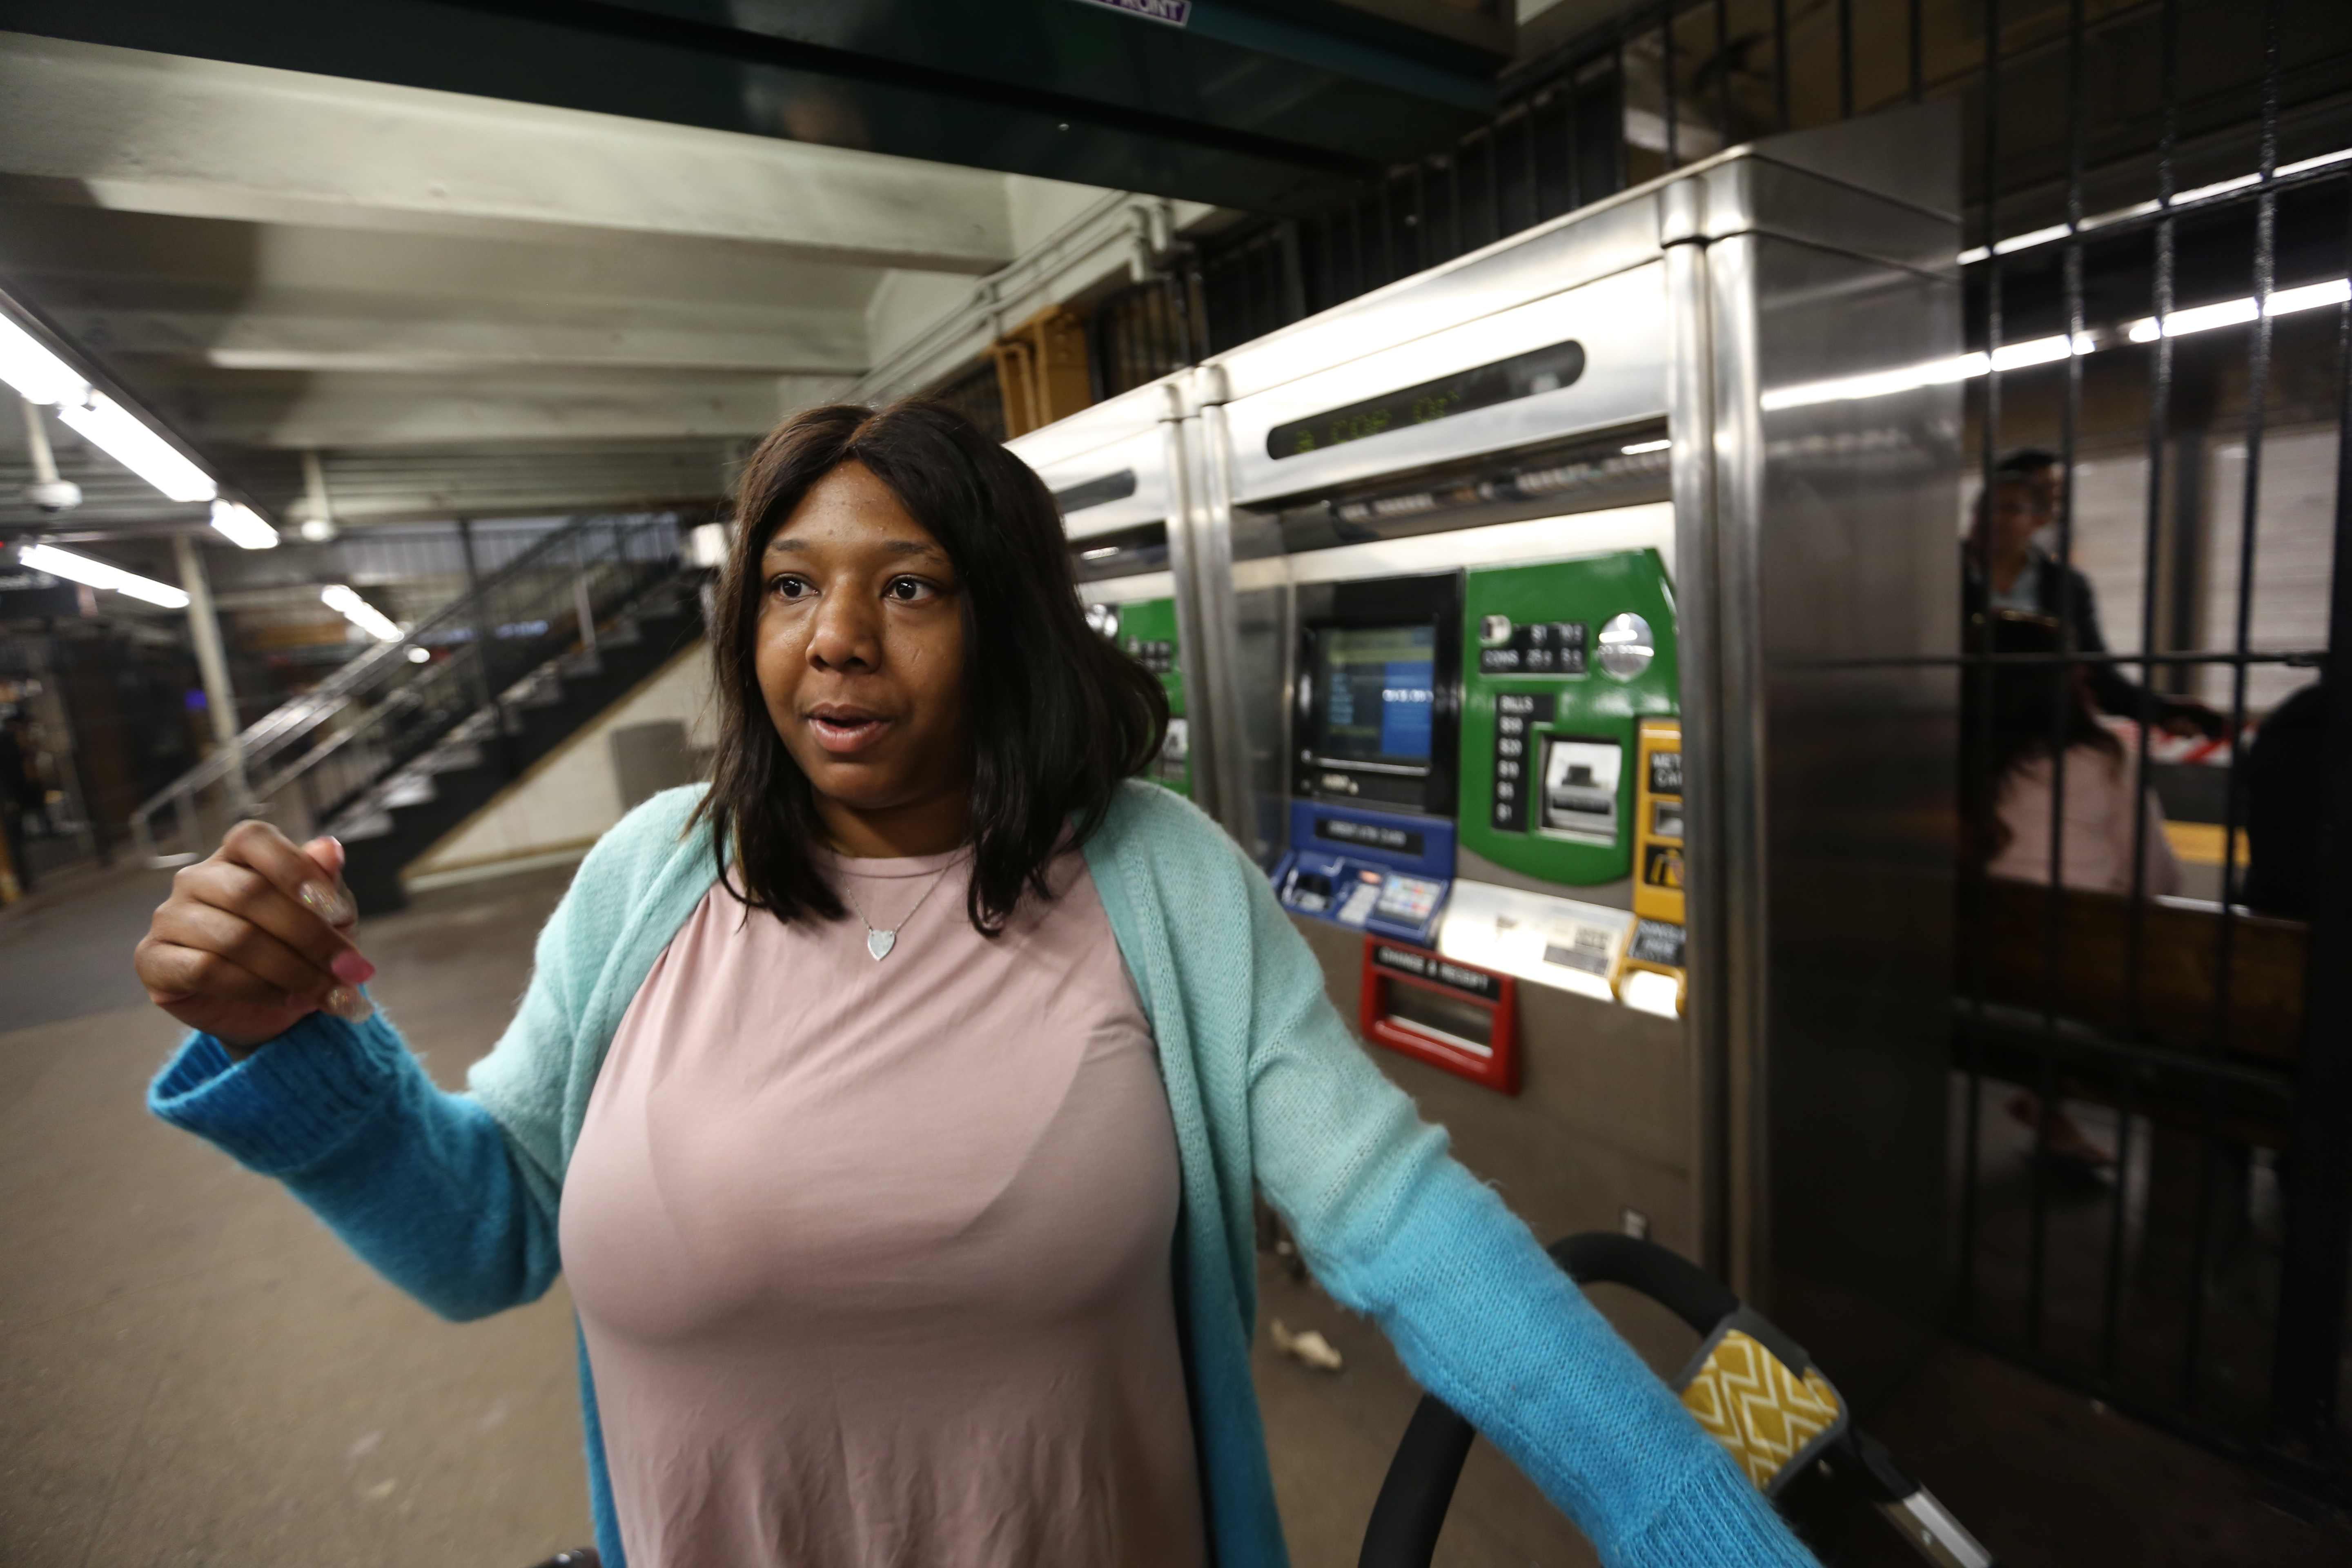 Usuario del metro, Latifah Washington. Desarrollan legislacion para que el NYPD reporte con mas detalles las citaciones y arrestos por no pagar el pasaje de metro.